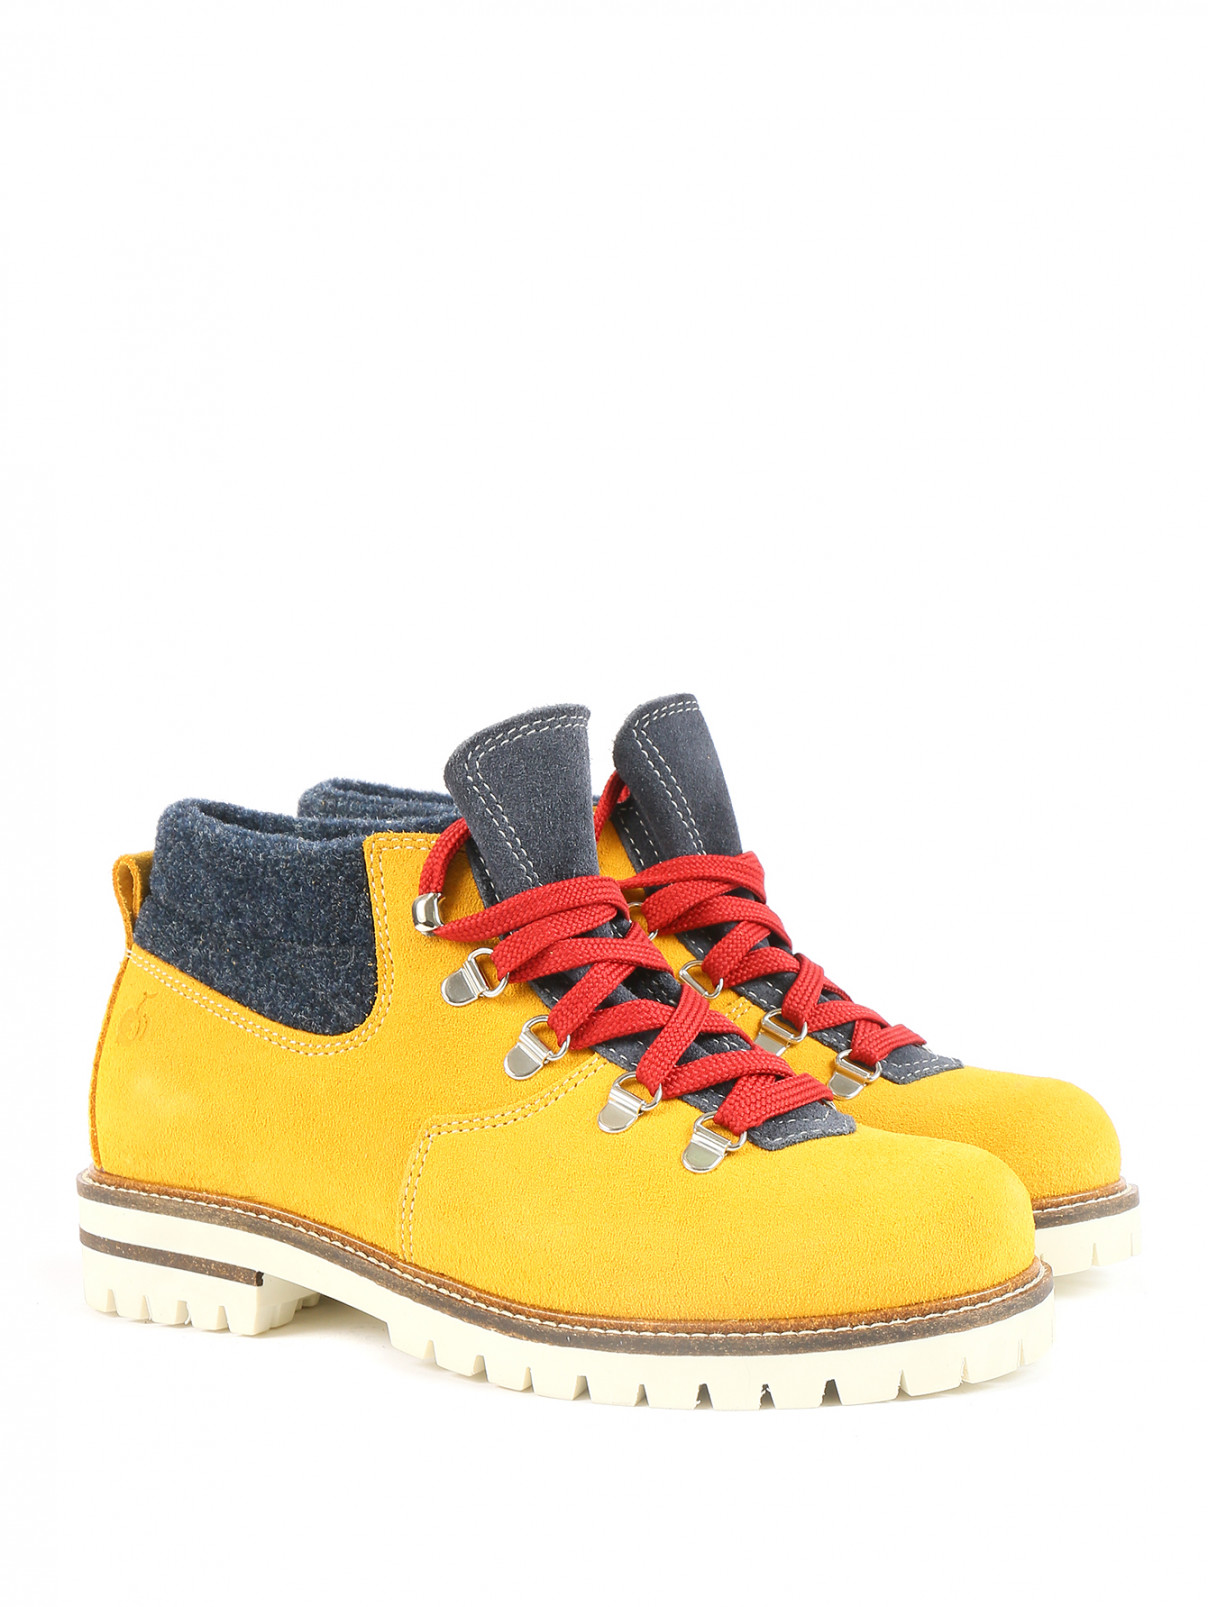 Ботинки из кожи на шнуровке с контрастными вставками BOSCO  –  Общий вид  – Цвет:  Желтый